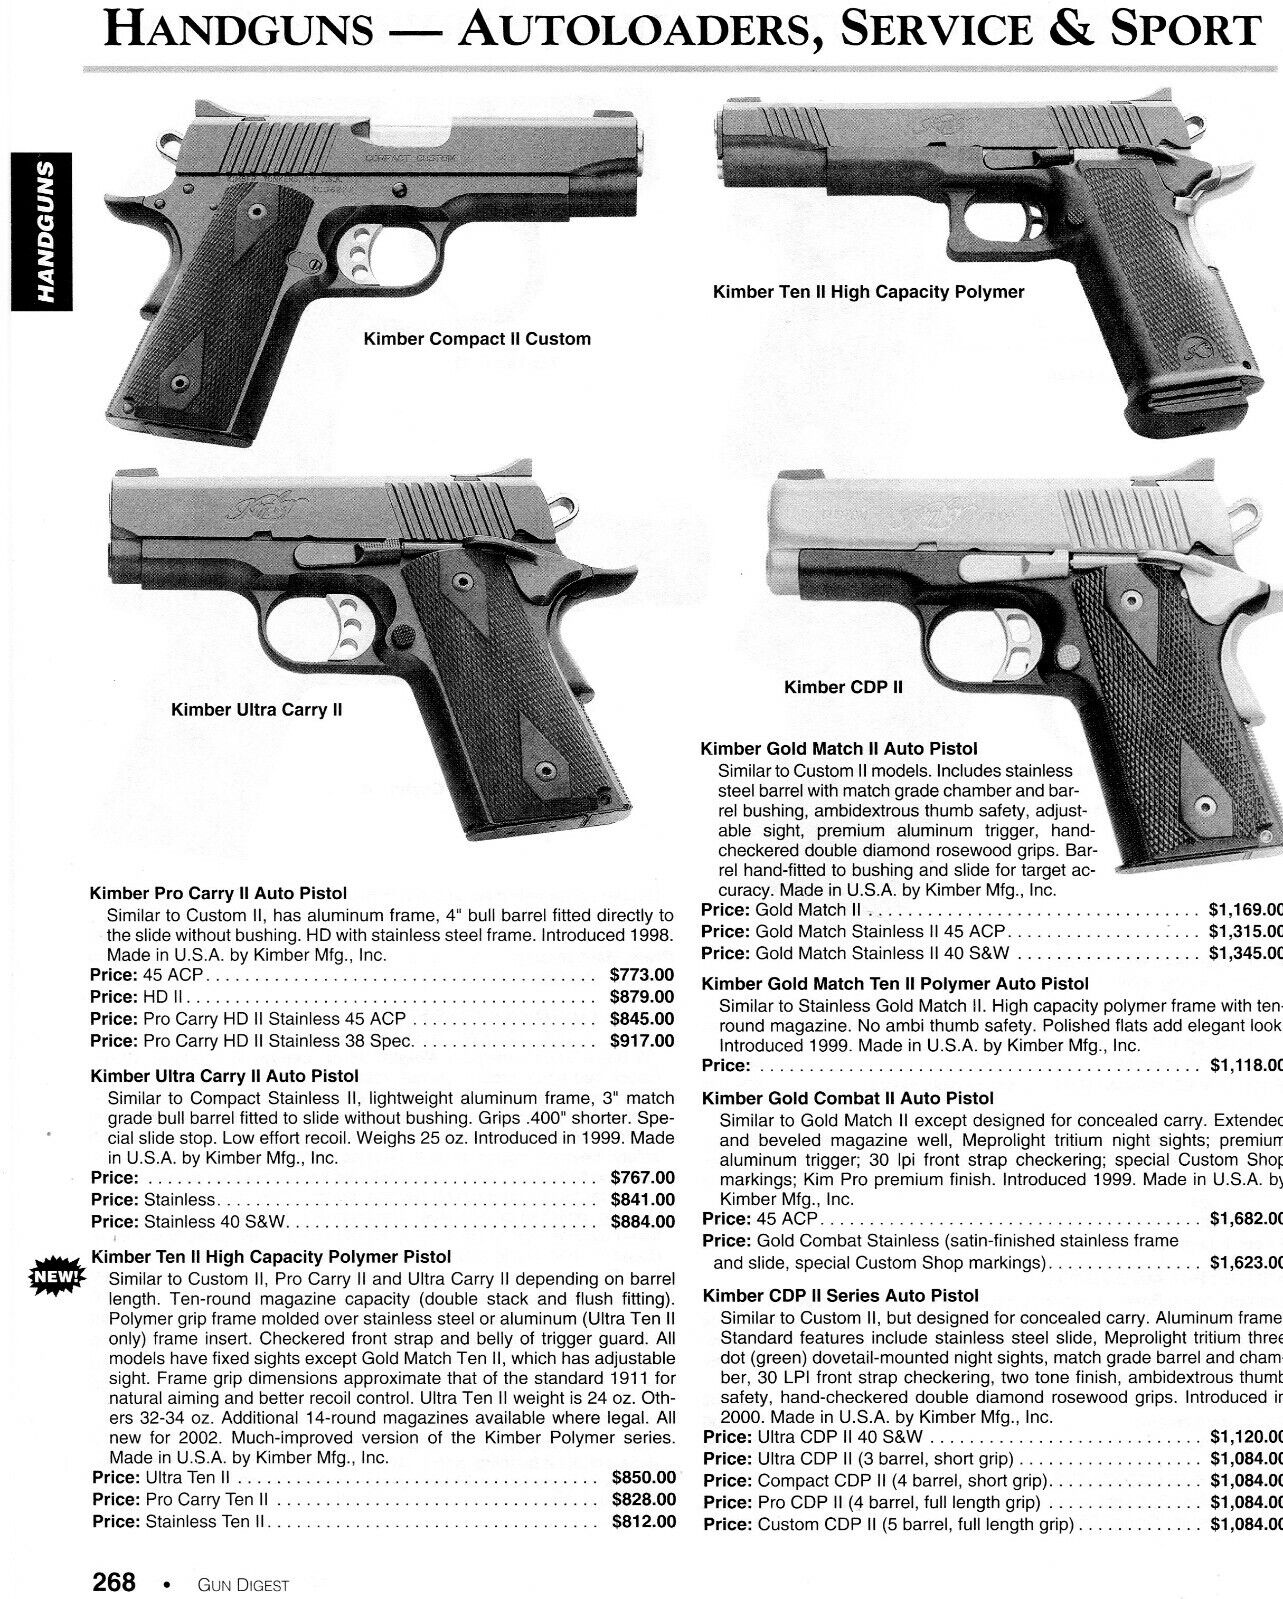 2003 Print Ad of Kimber Pistol Model Compact II, Ten II, Ultra Carry II, CDP II